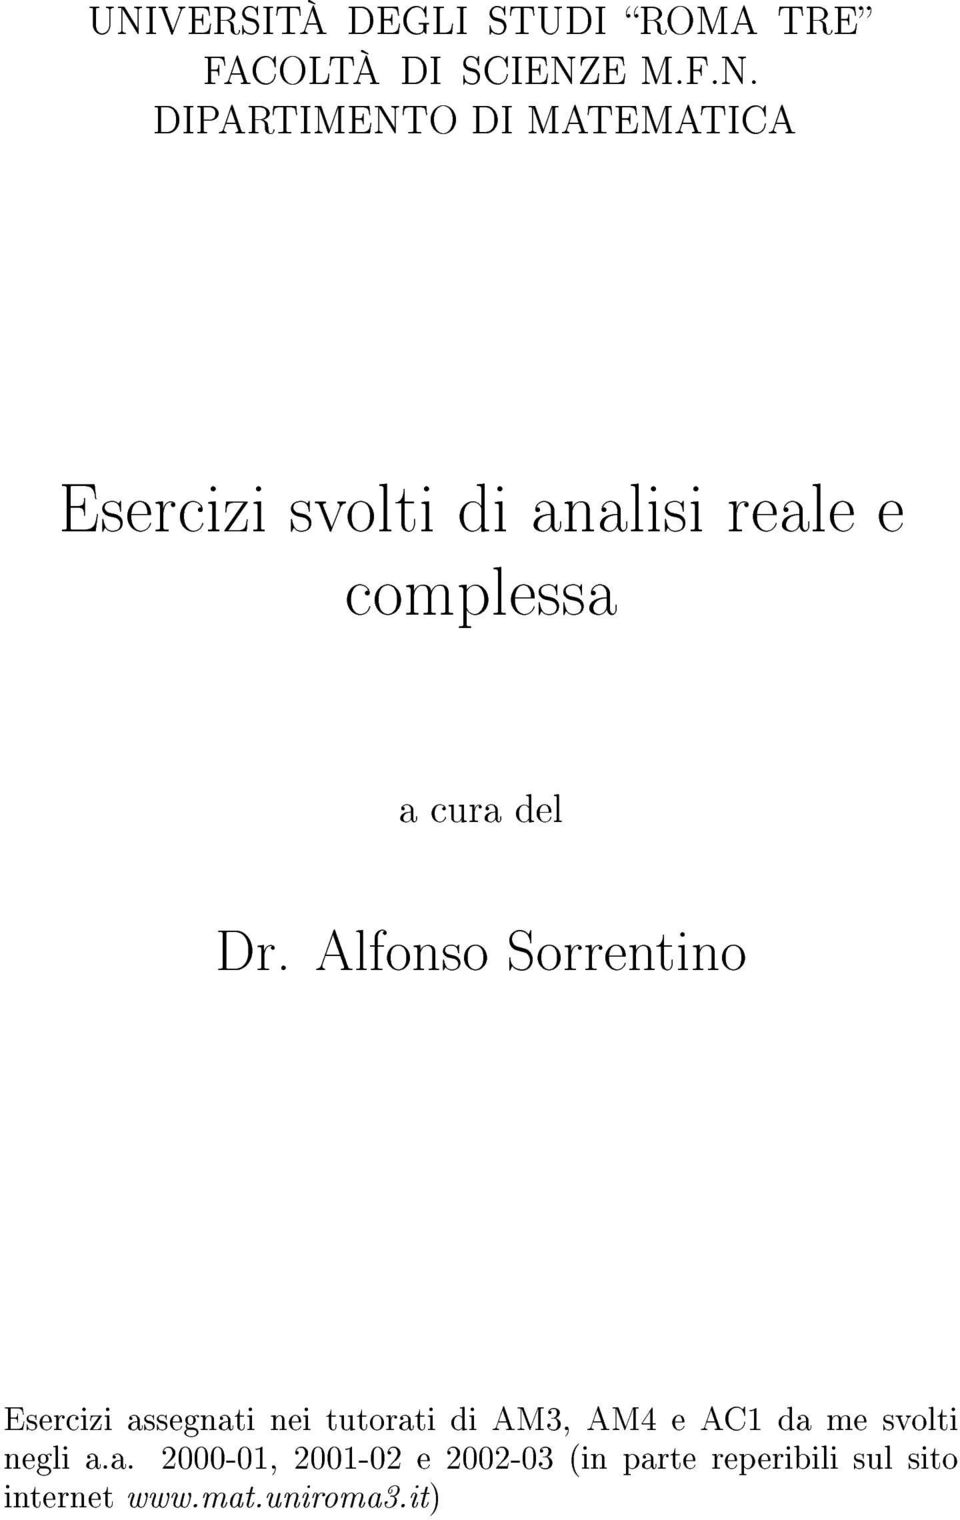 Alfonso Sorrentino Esercizi assegnati nei tutorati di AM3, AM4 e AC da me